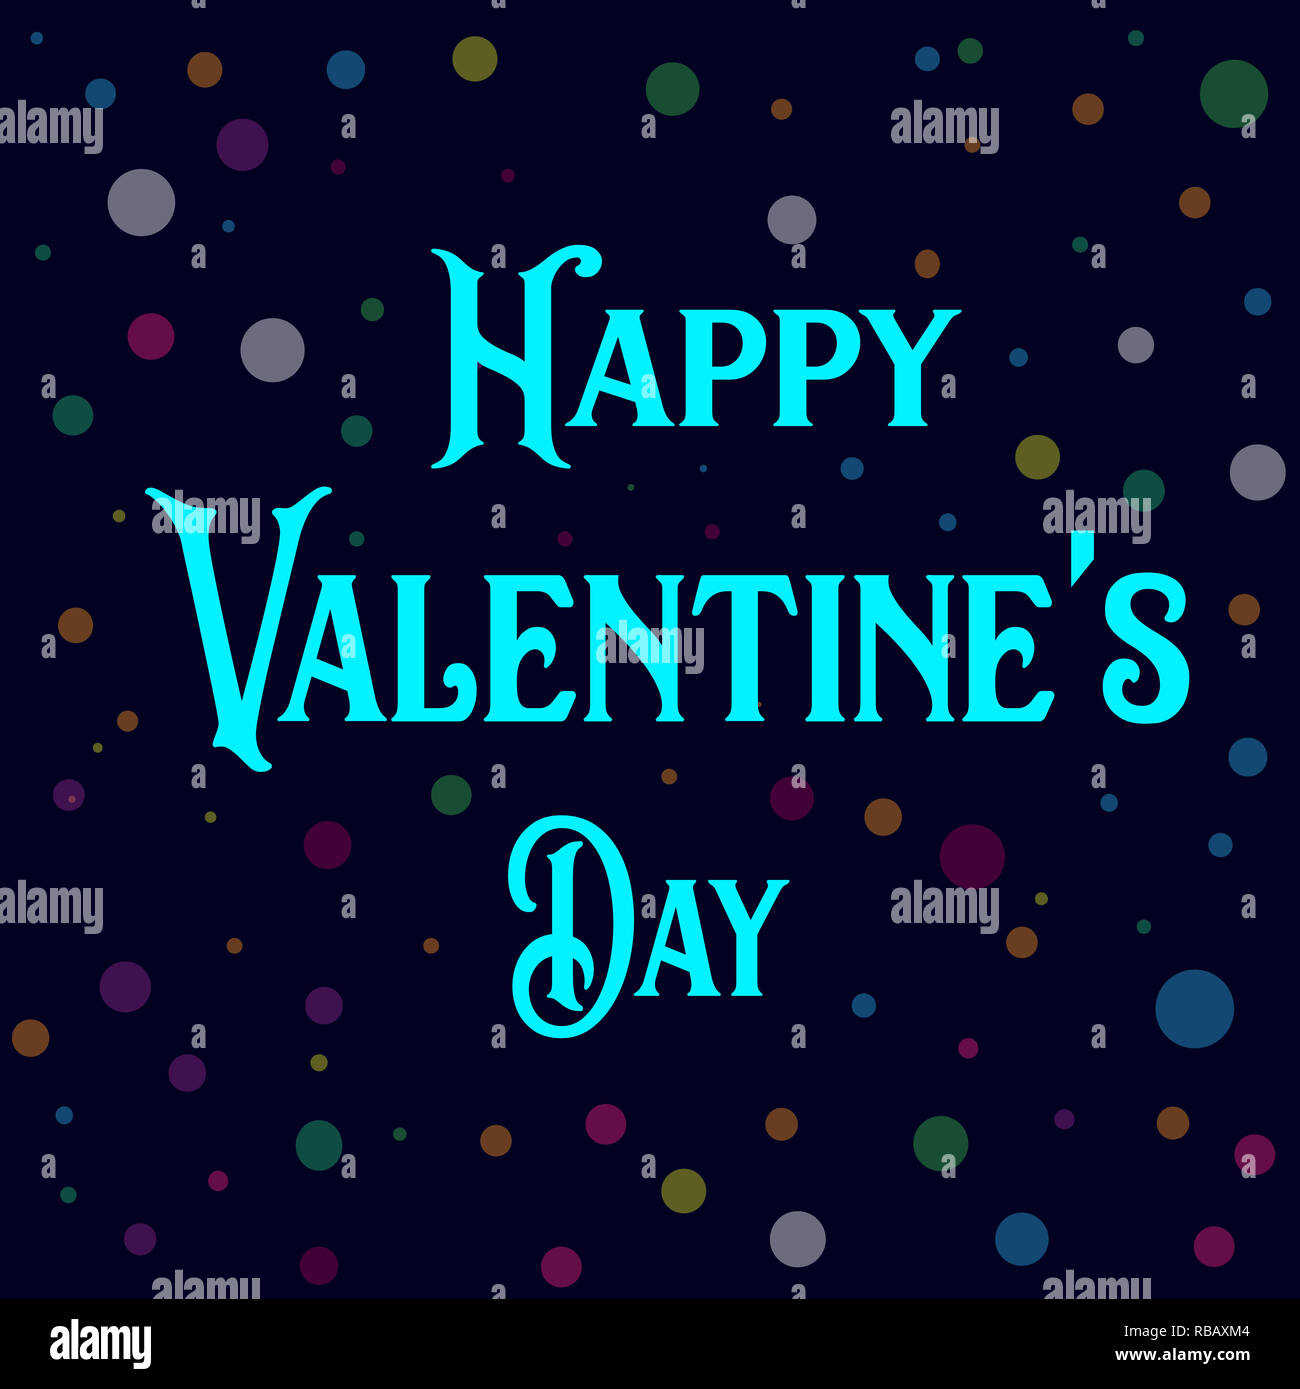 Happy Valentine's Day de conception d'image Banque D'Images